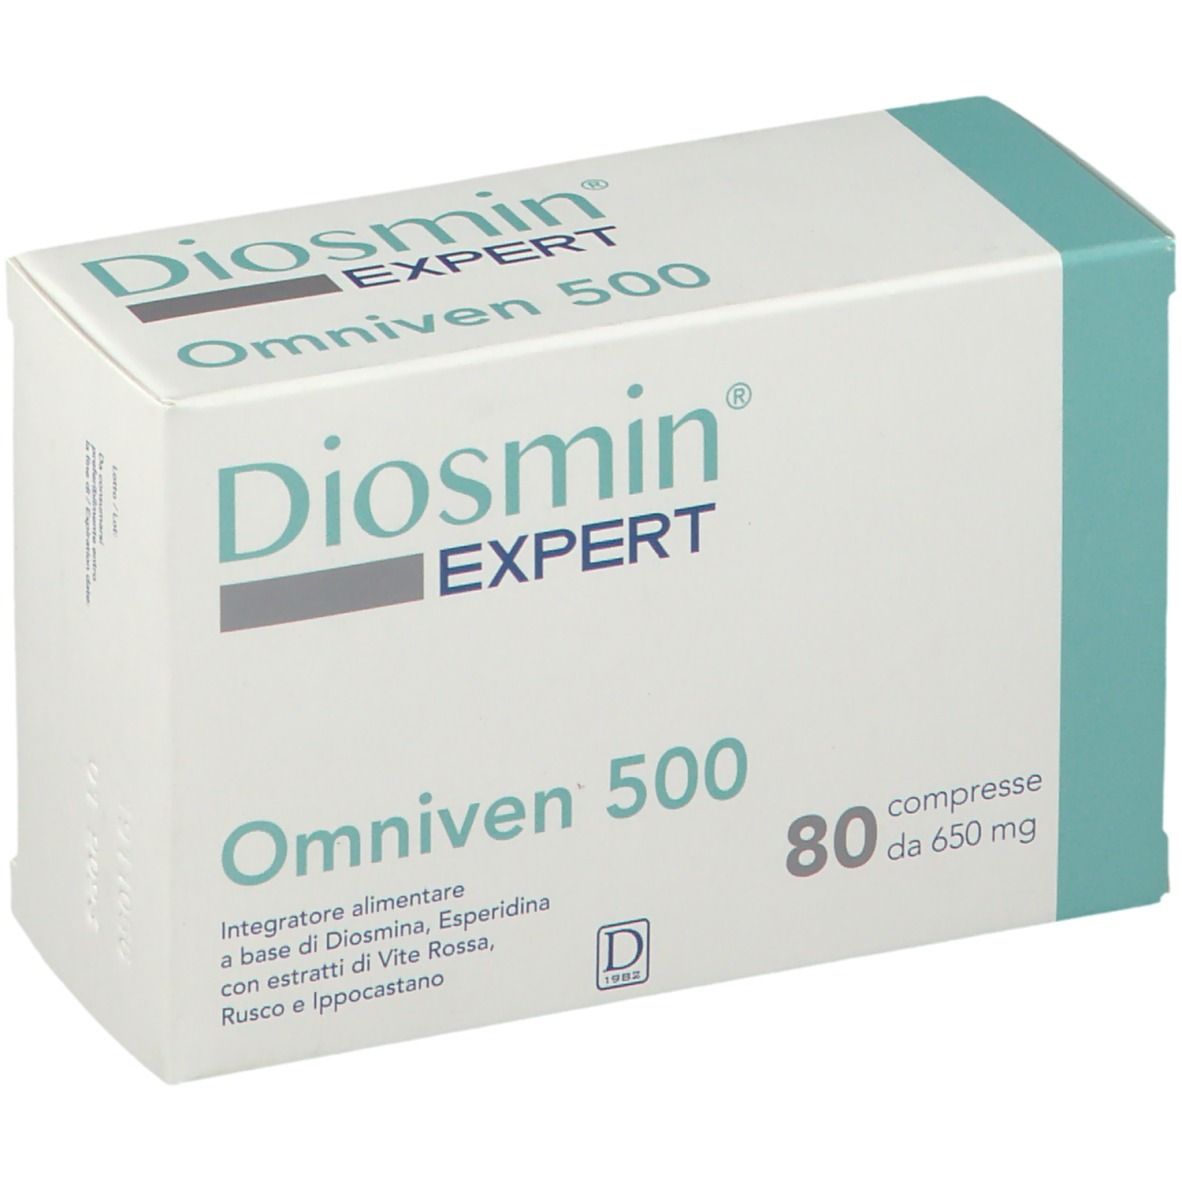 Diosmin experto omniven 500 80 compresas - DLAC